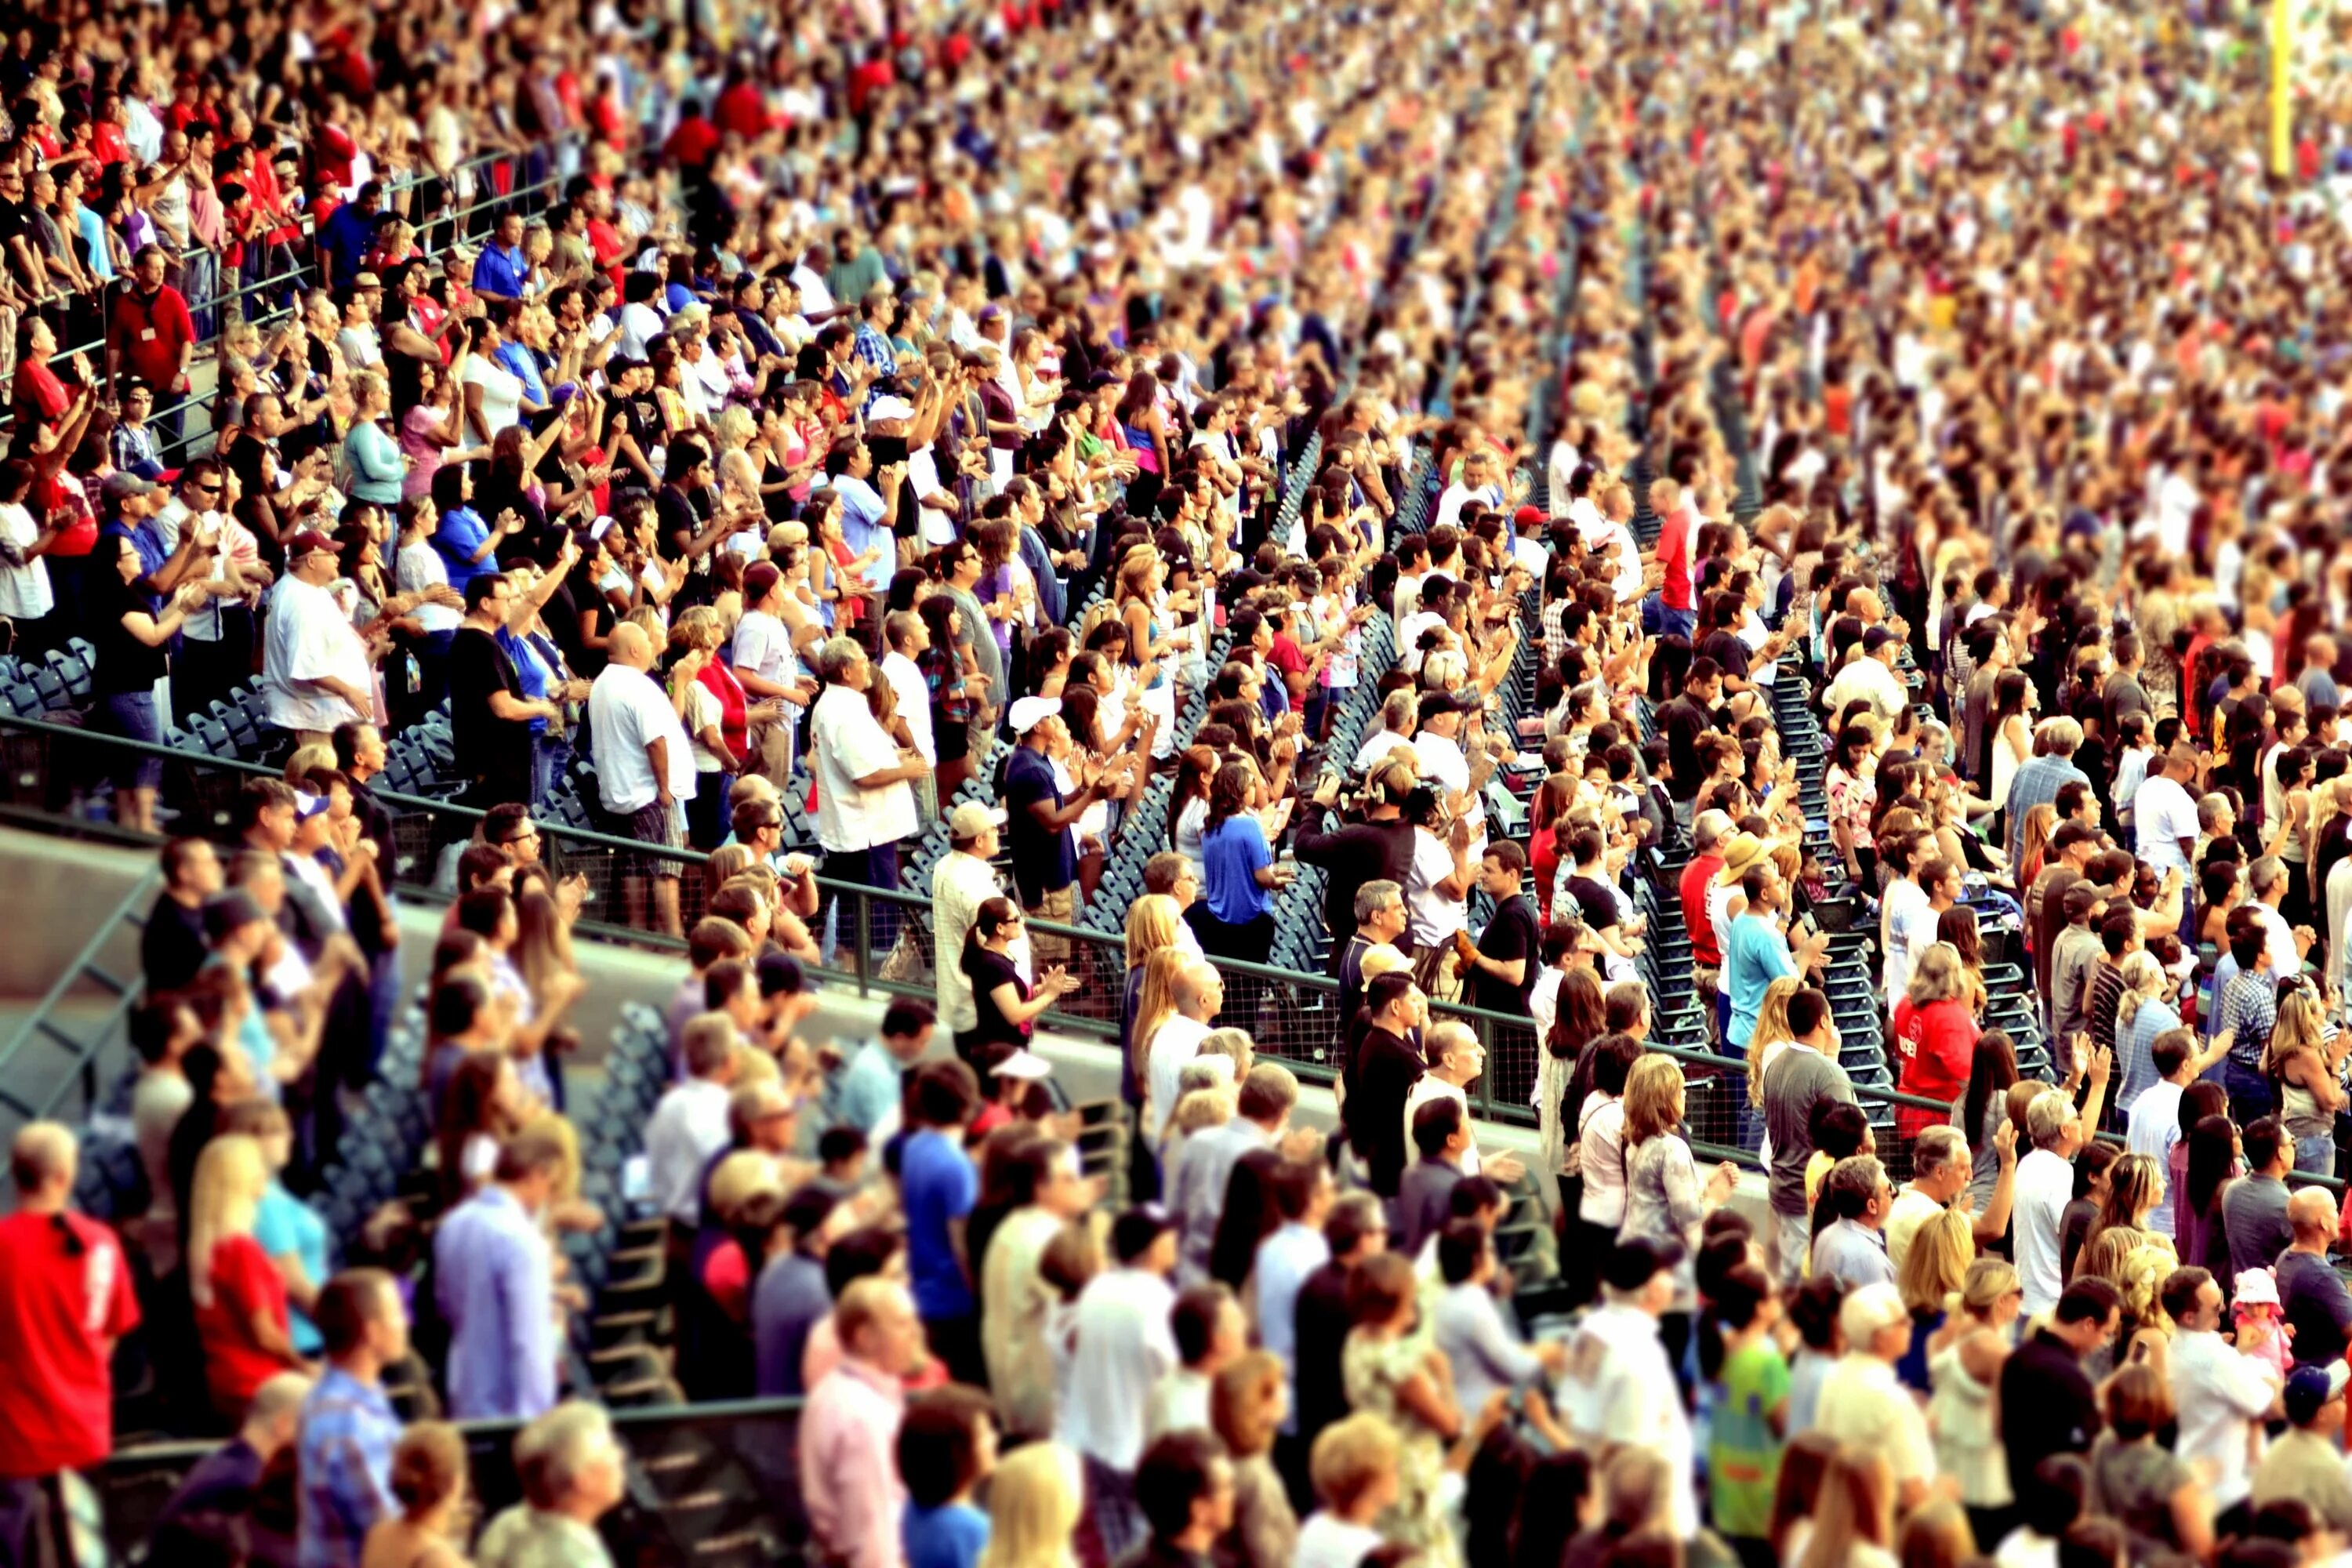 Народу то сколько. Человек толпы. Много людей. Огромное скопление людей. Толпа картинки.